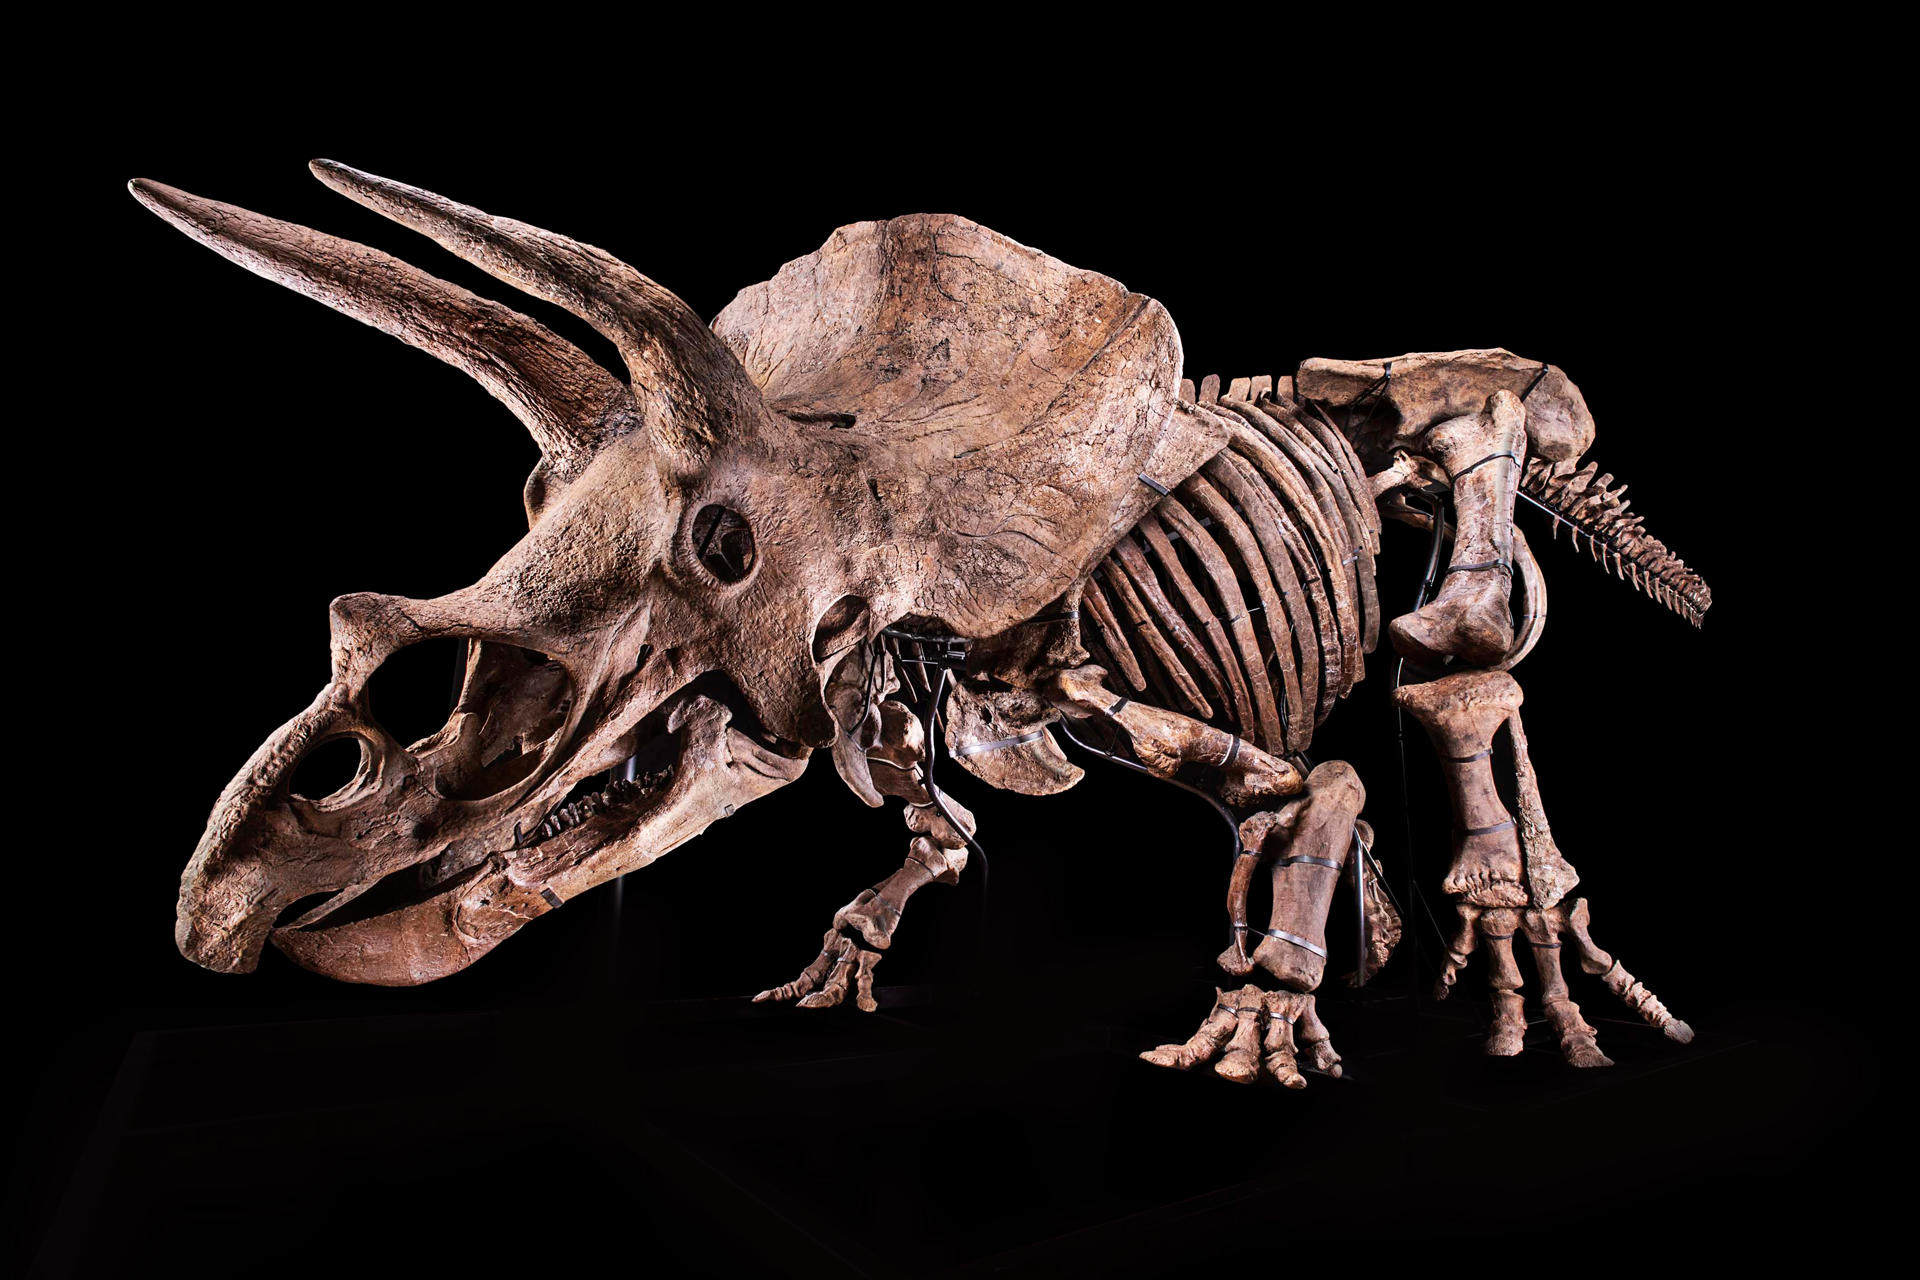 Fotografía cedida por el Glazer Children's Museum donde se muestra un esqueleto de un ejemplar de Triceratops, apodado 